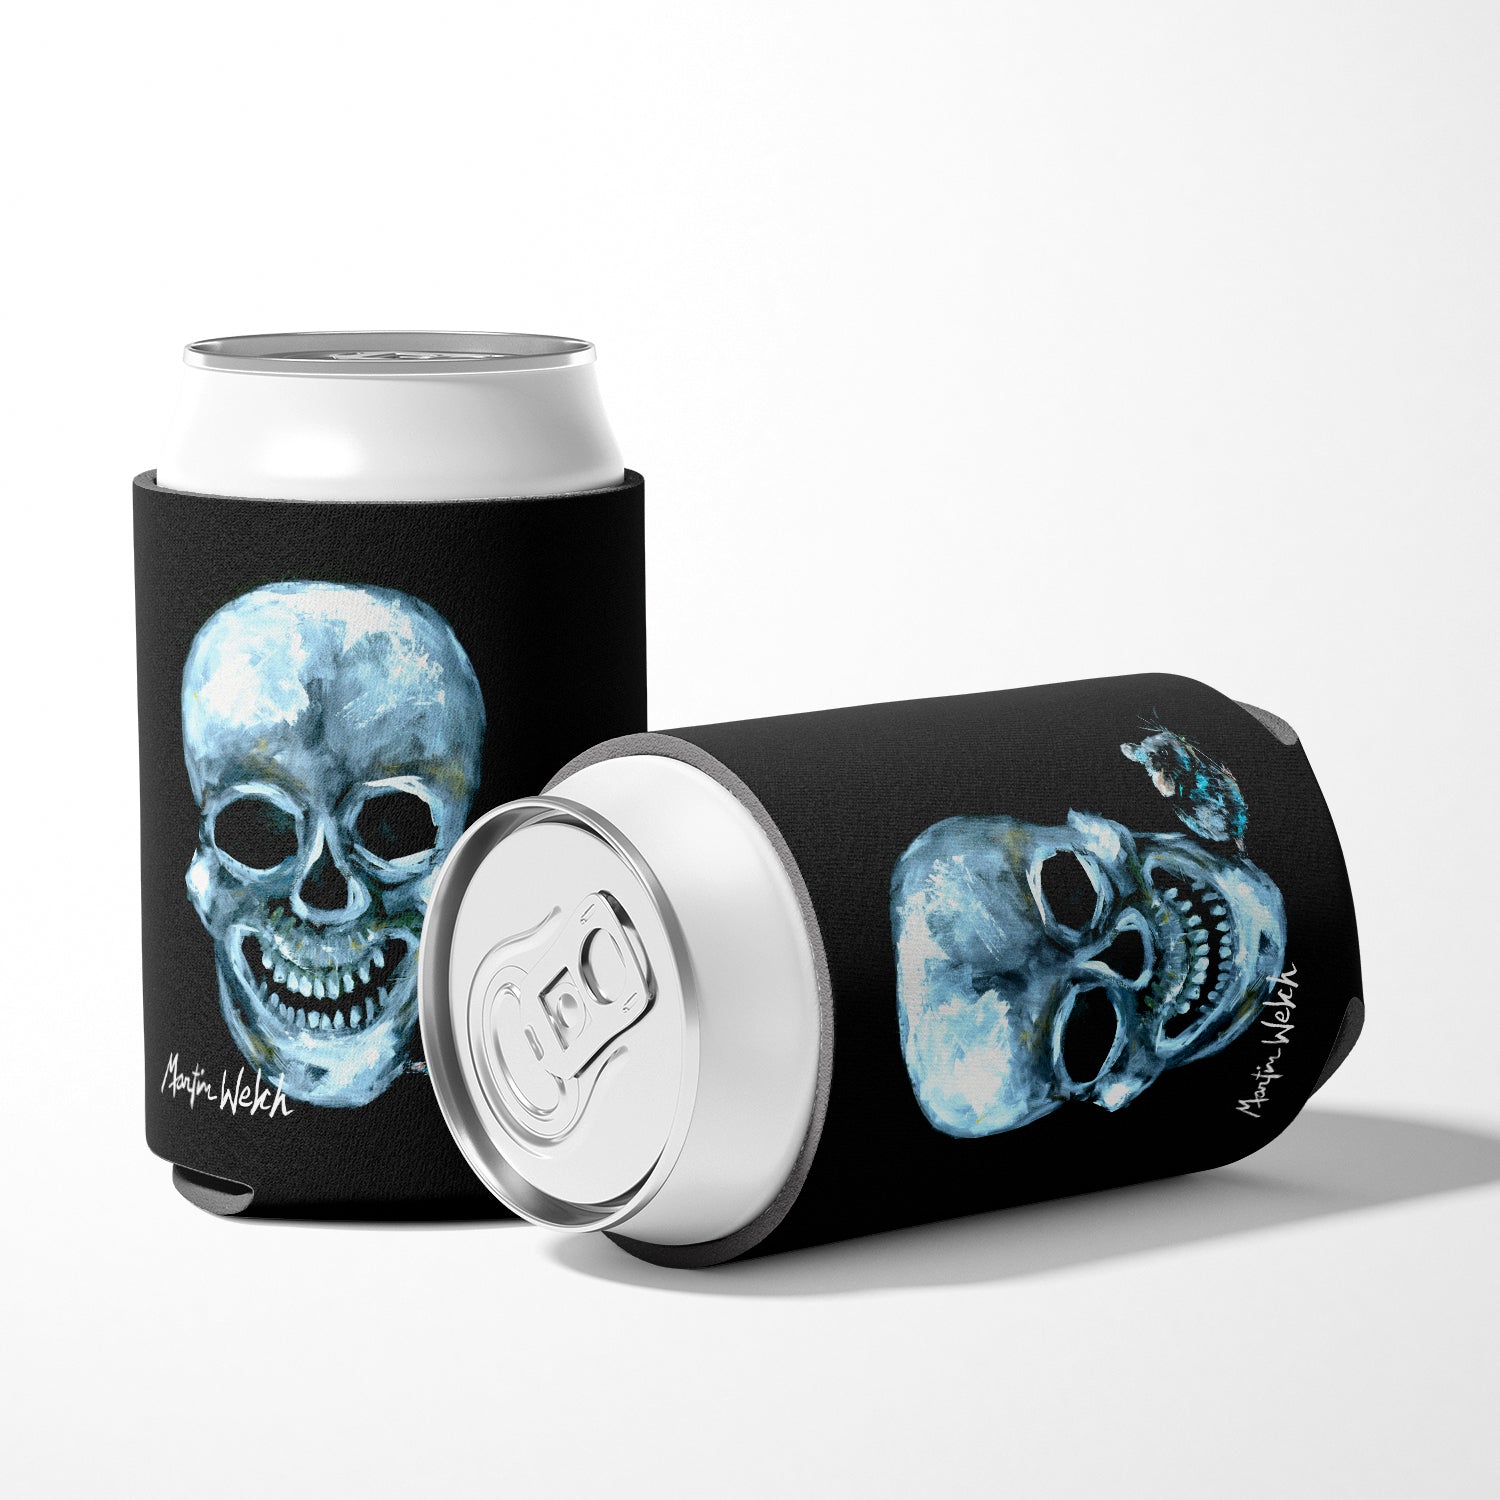 Ekk A Meece Skull and Mouse Can or Bottle Beverage Insulator Hugger.